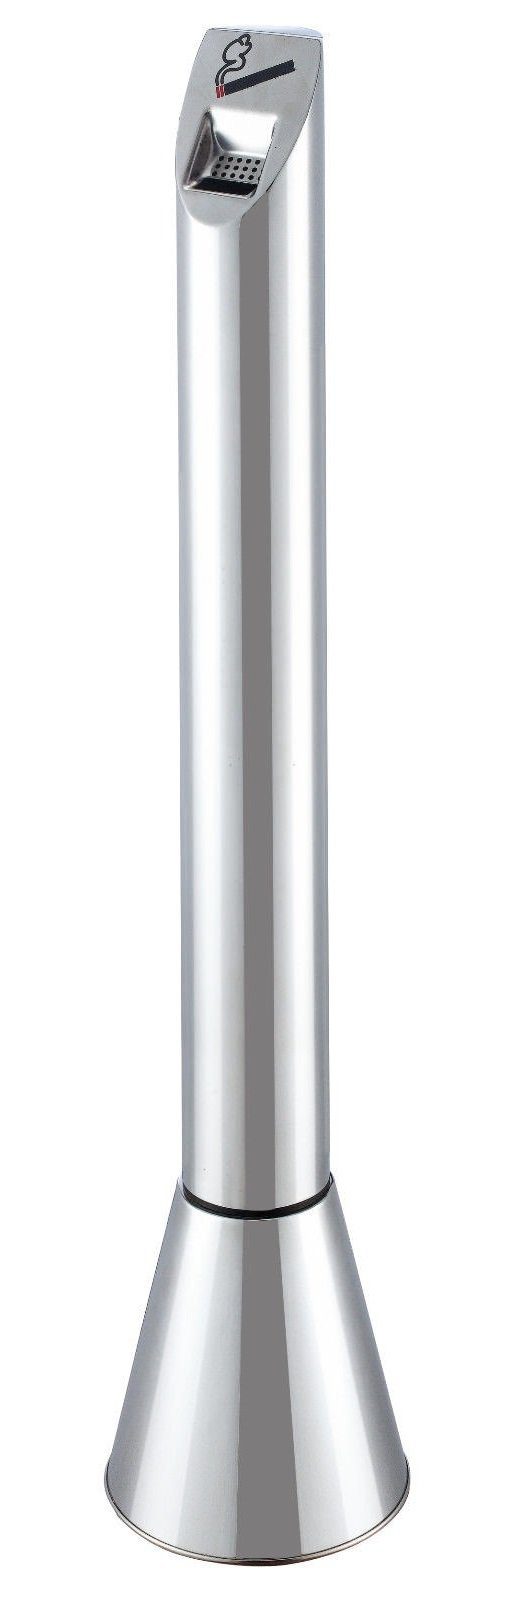 Steelboxx Aschenbecher Standascher Aschenbecher Außenbereich Ascher  110x22,5cm Edelstahl, Elegante, witterungsbeständiger Standaschenbecher aus